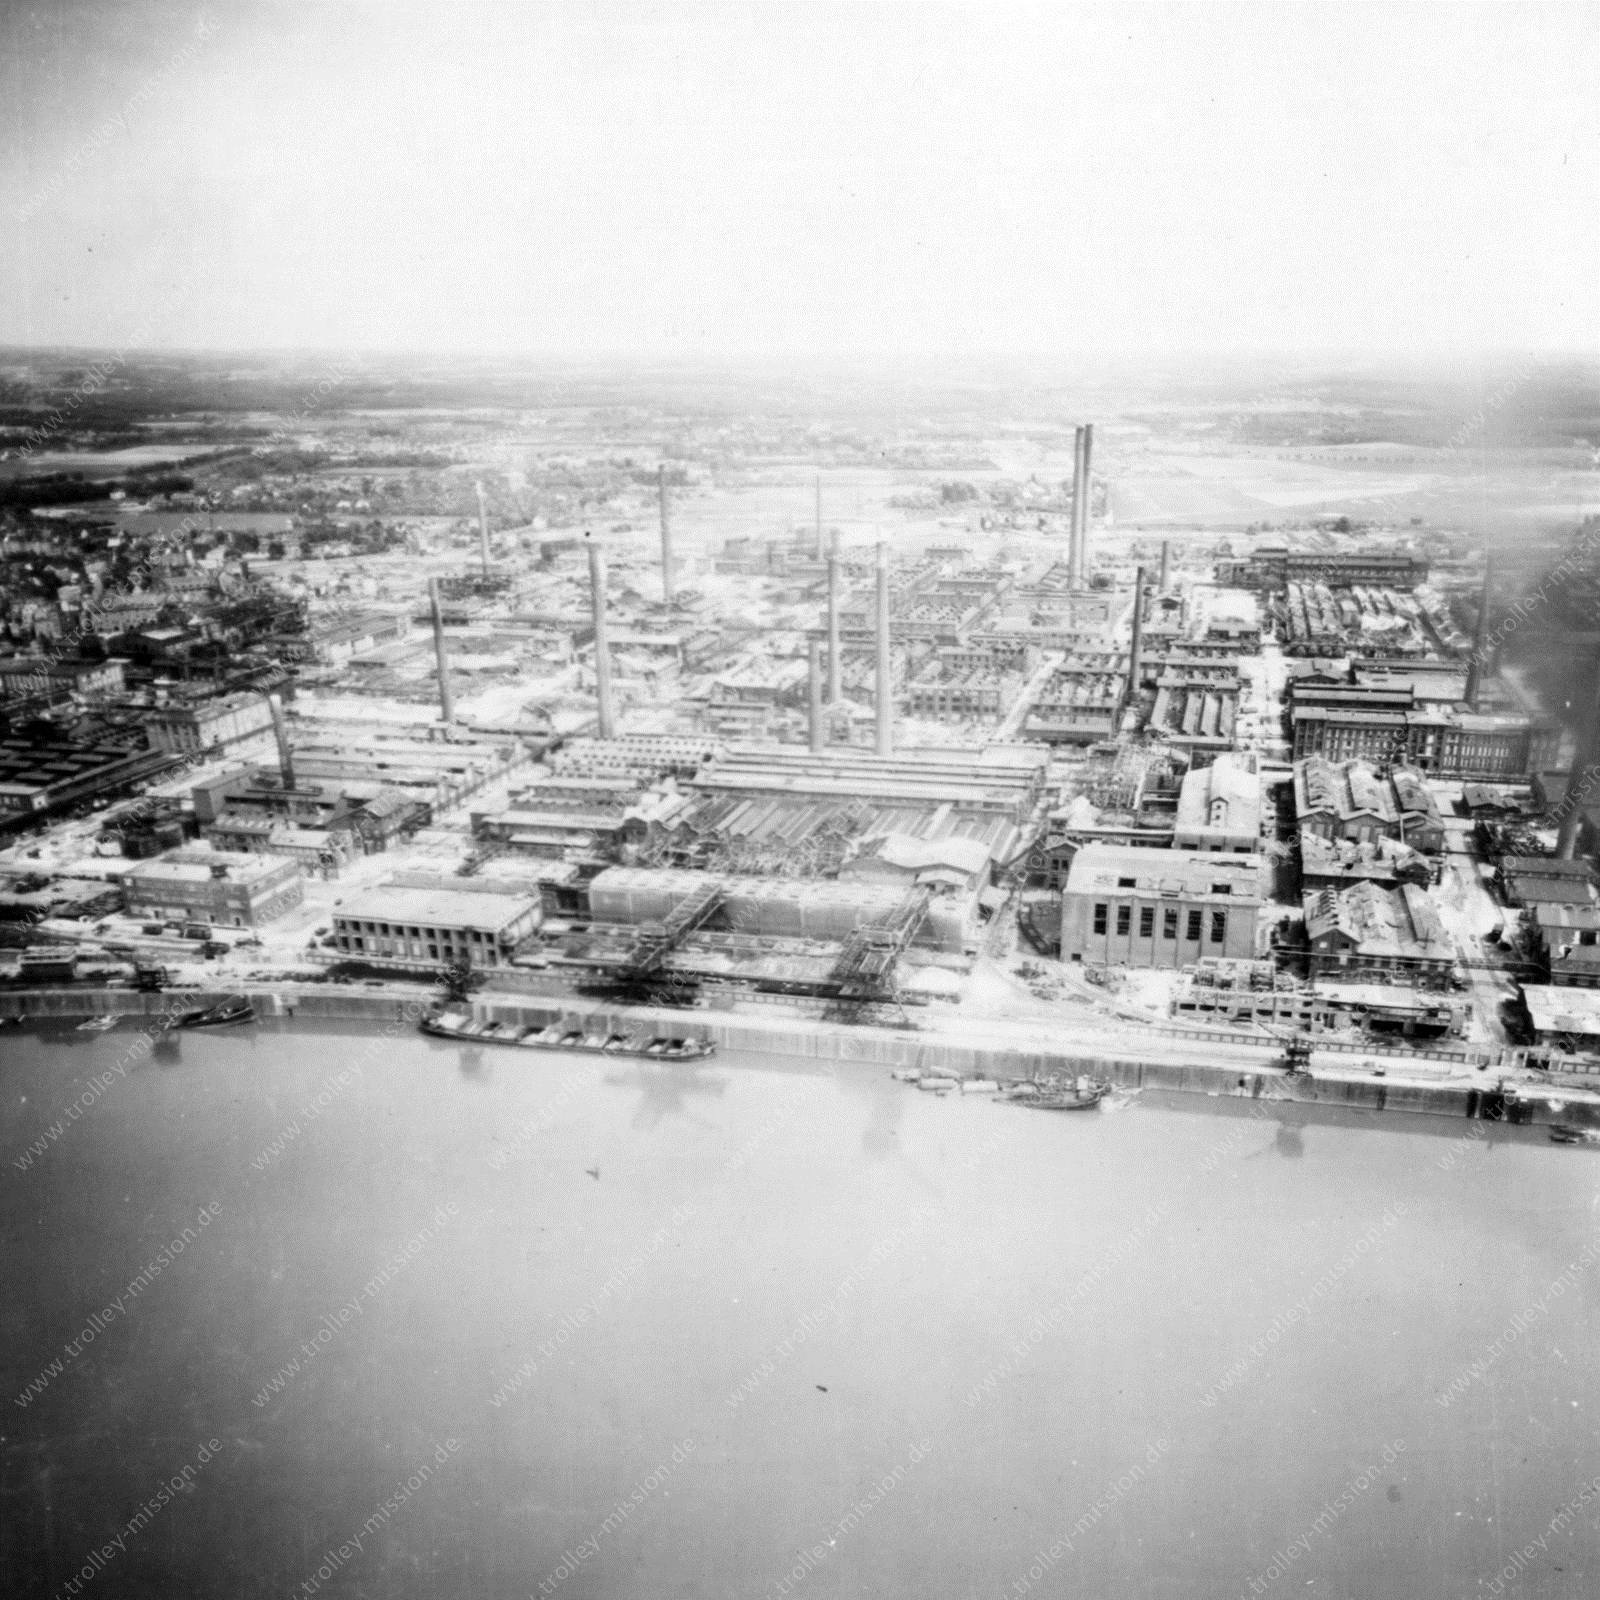 Luftaufnahme der Farbenfabriken vormals Friedrich Bayer & Co. in Leverkusen im Zweiten Weltkrieg